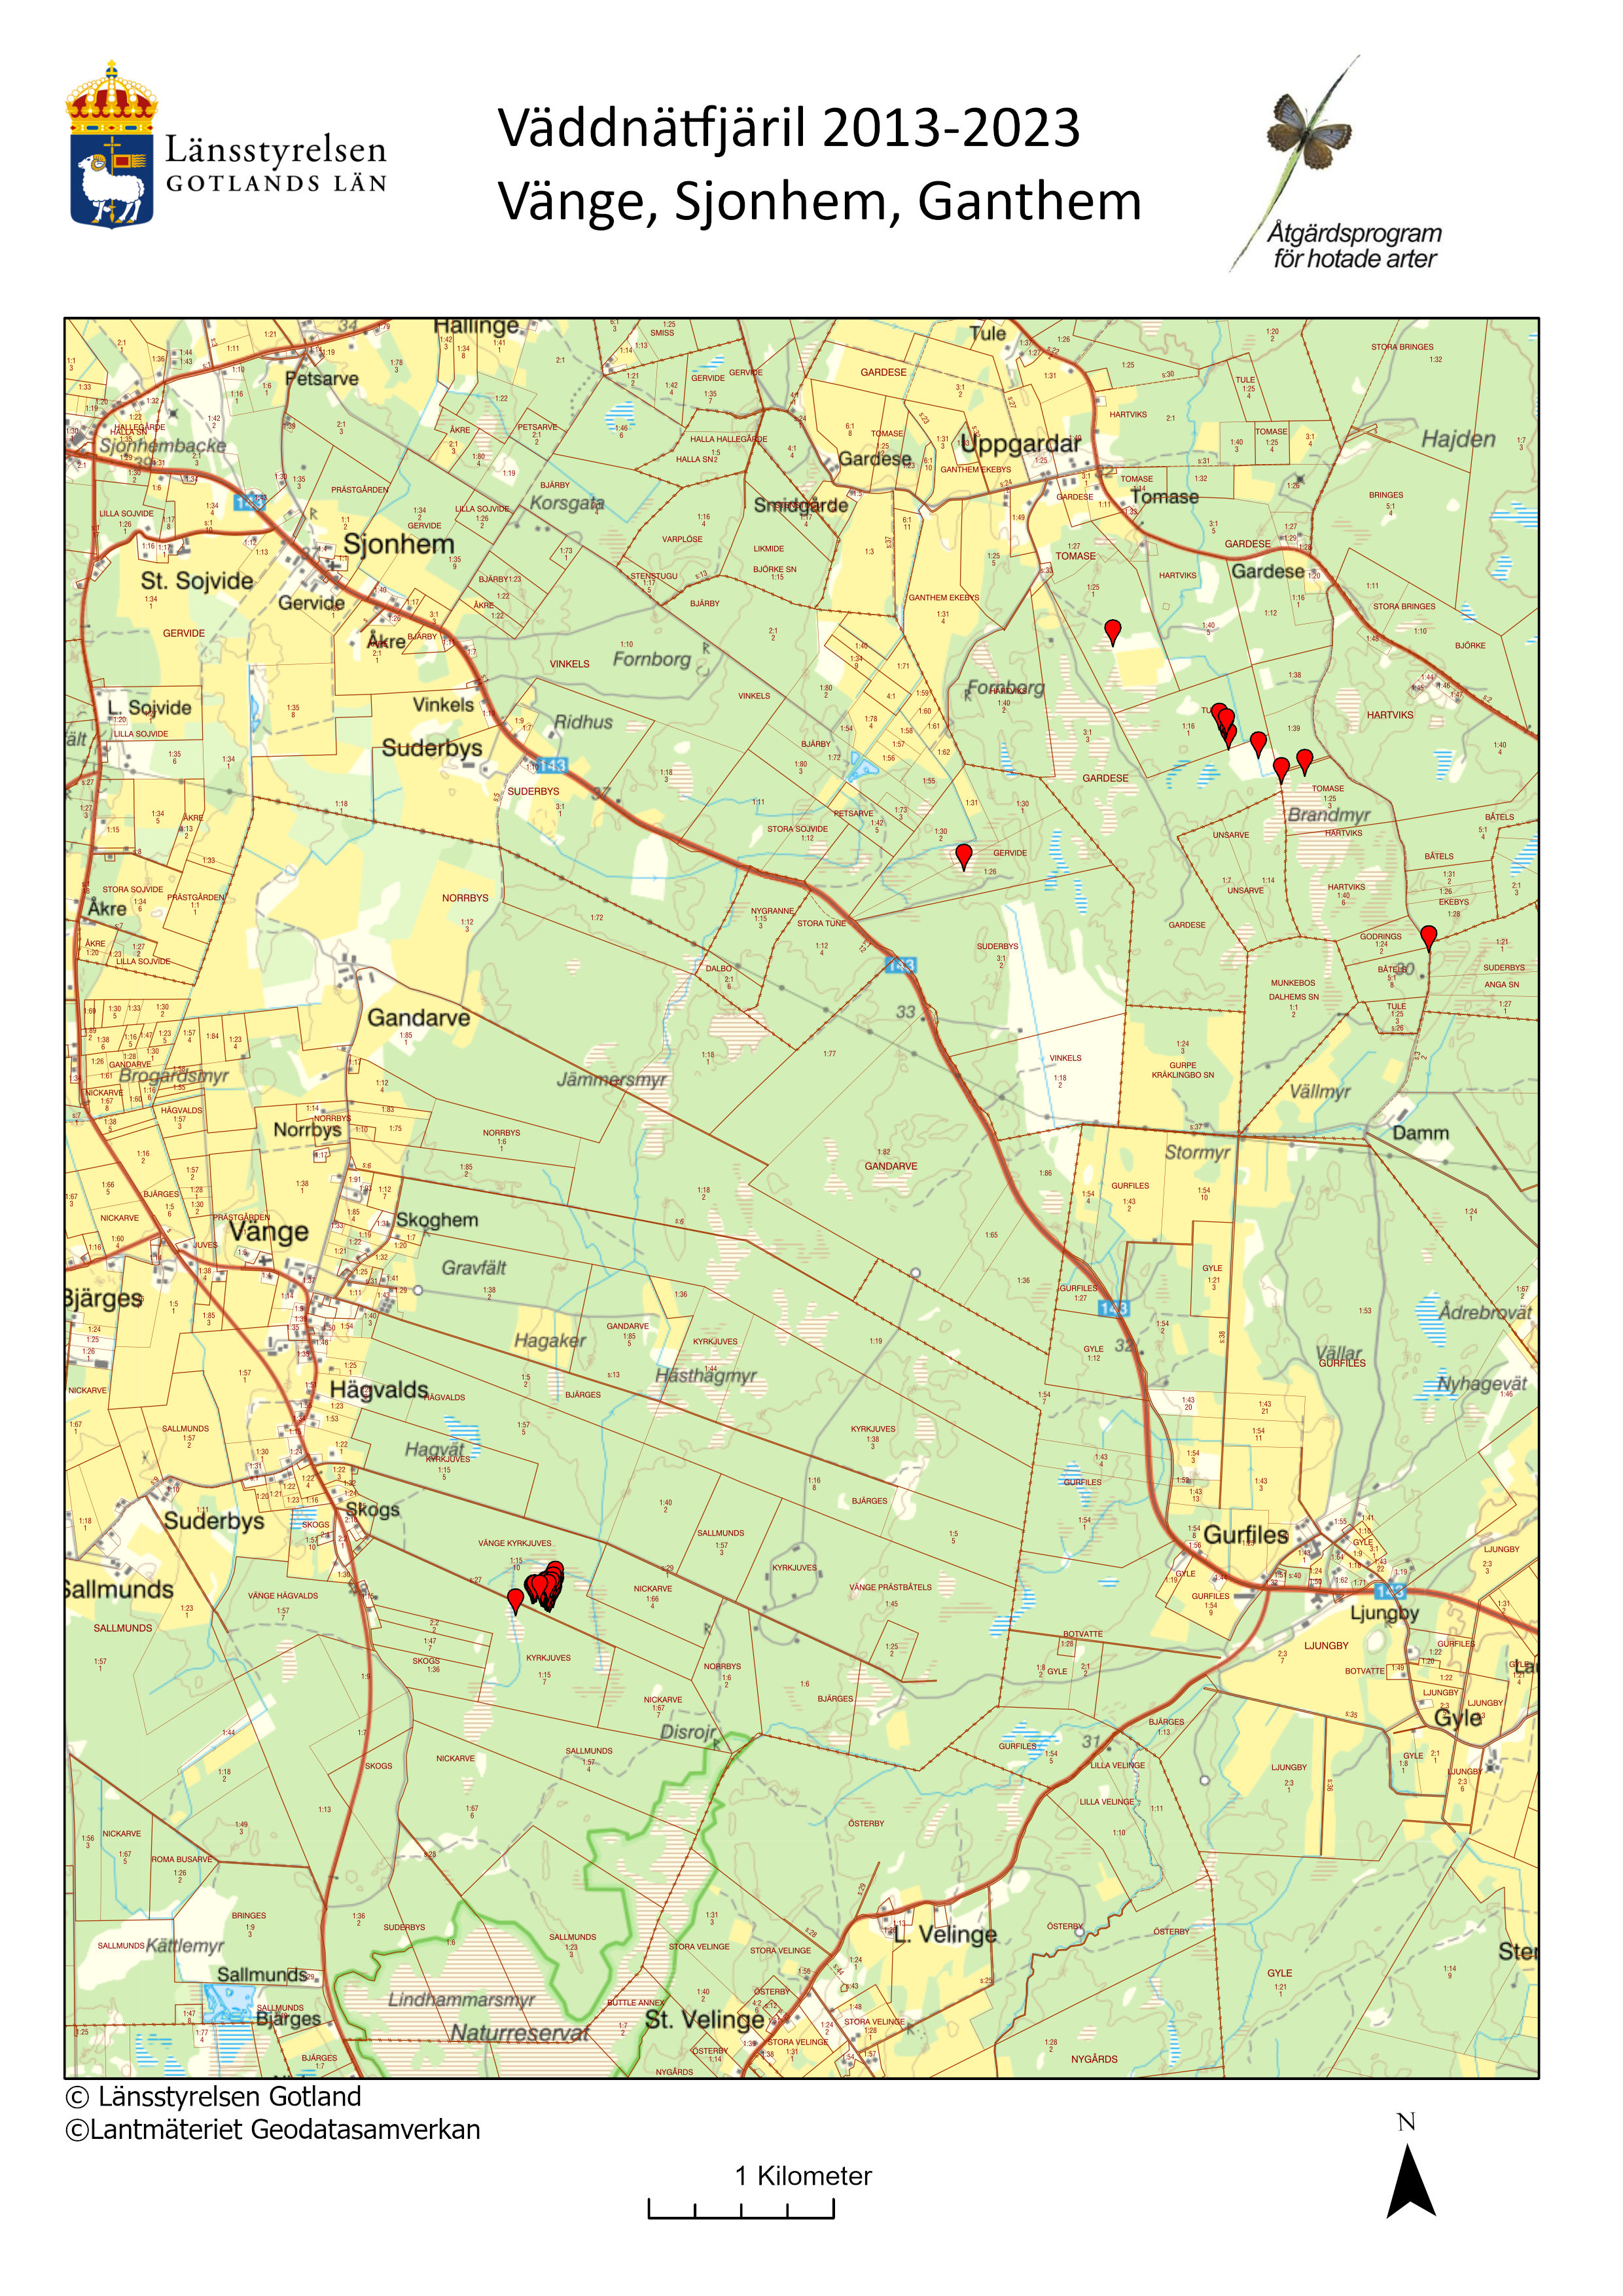 Karta över fynd av väddnätfjäril 2013-2023